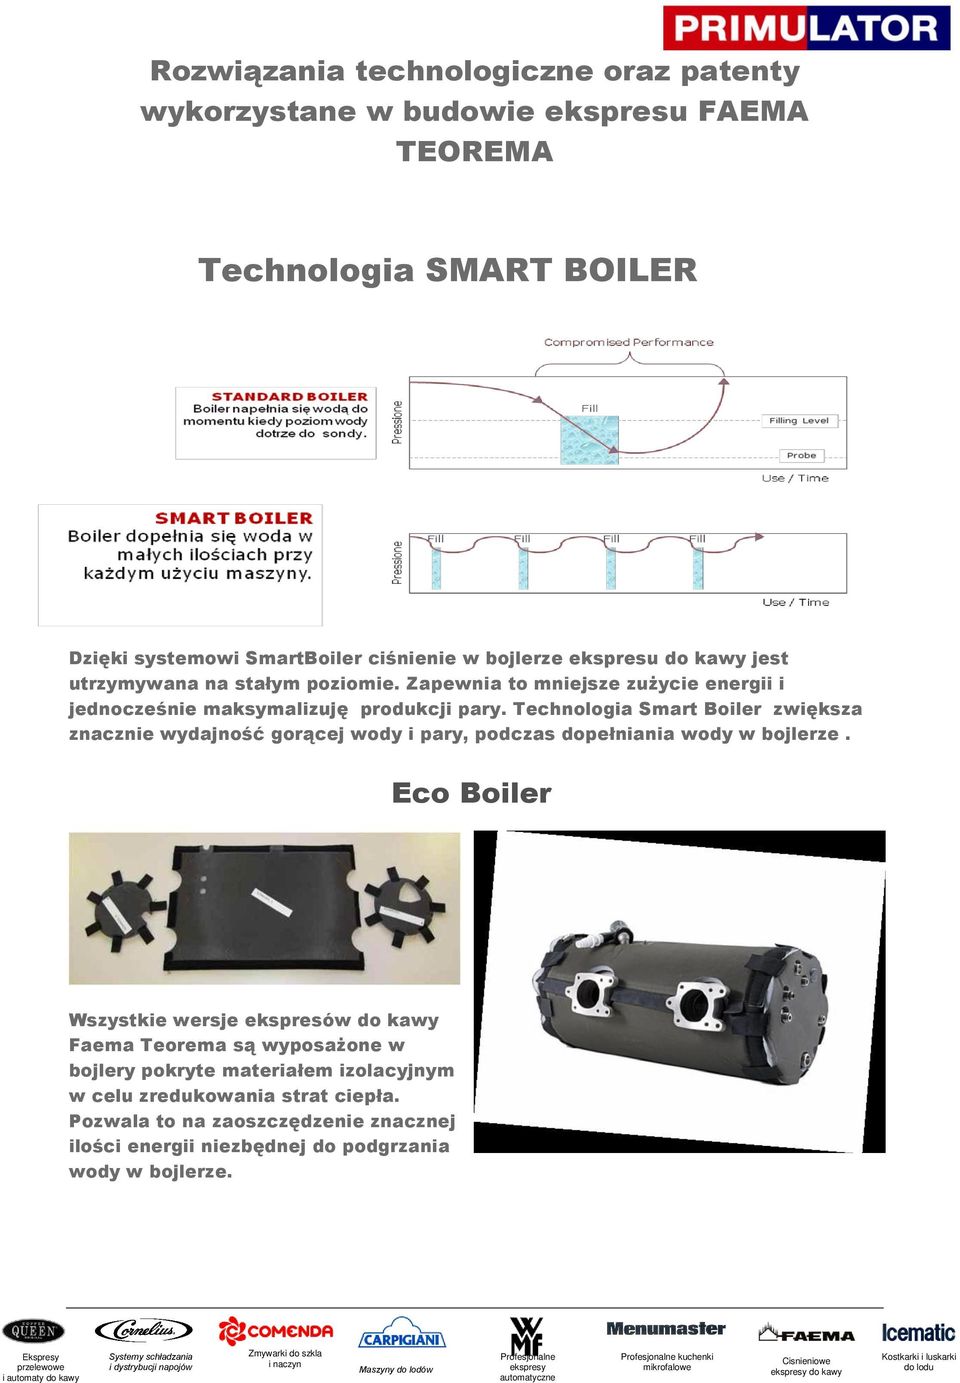 Technologia Smart Boiler zwiększa znacznie wydajność gorącej wody i pary, podczas dopełniania wody w bojlerze.